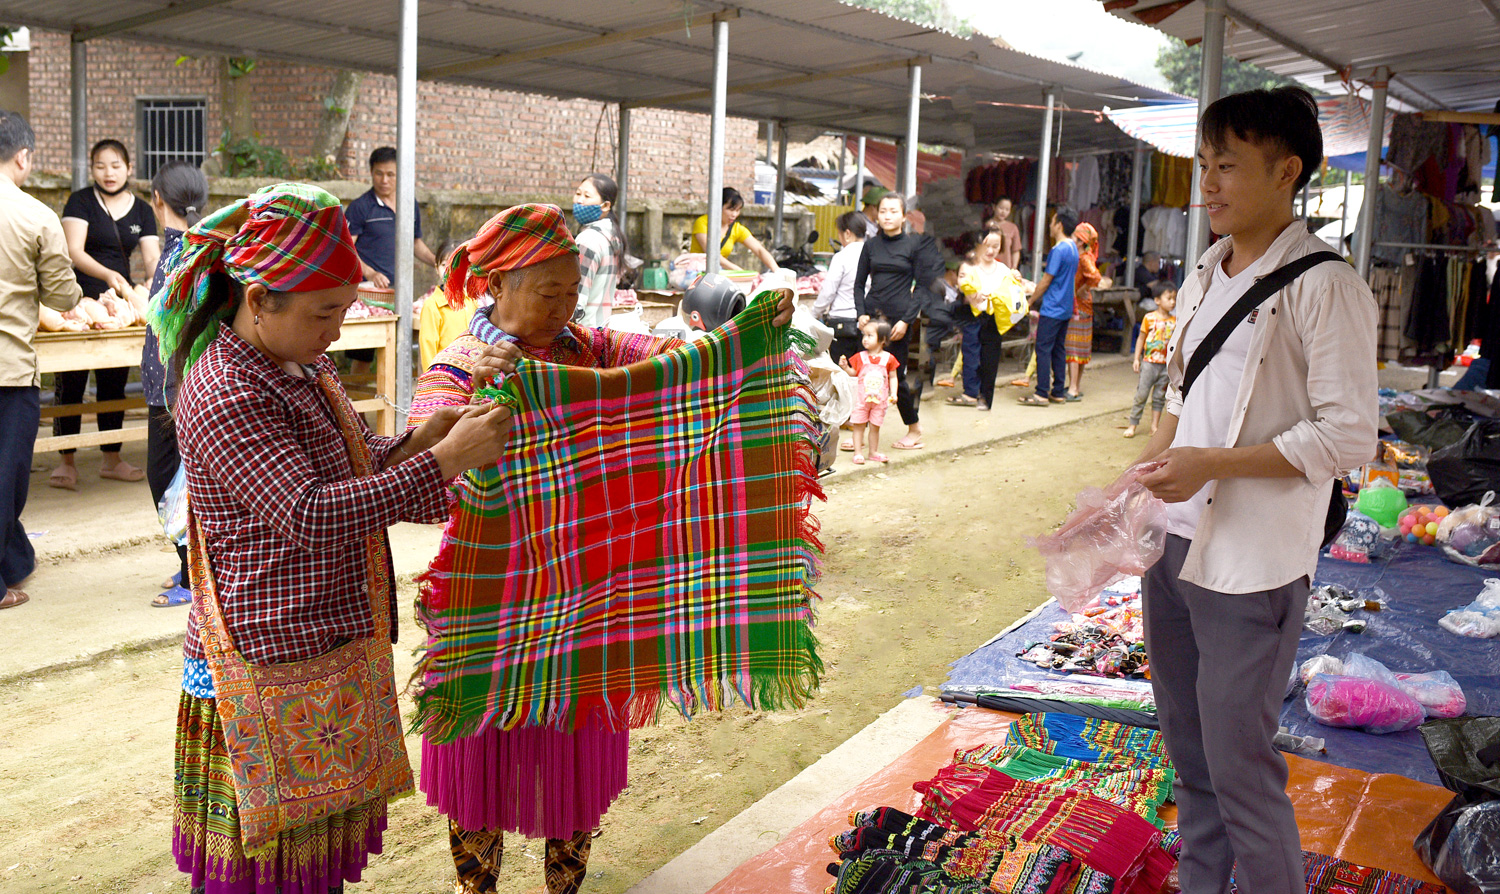 Hai người Mông đang trả giá một chiếc khăn thổ cẩm, đây là chiếc khăn mà người phụ nữ Mông thường đội đầu.